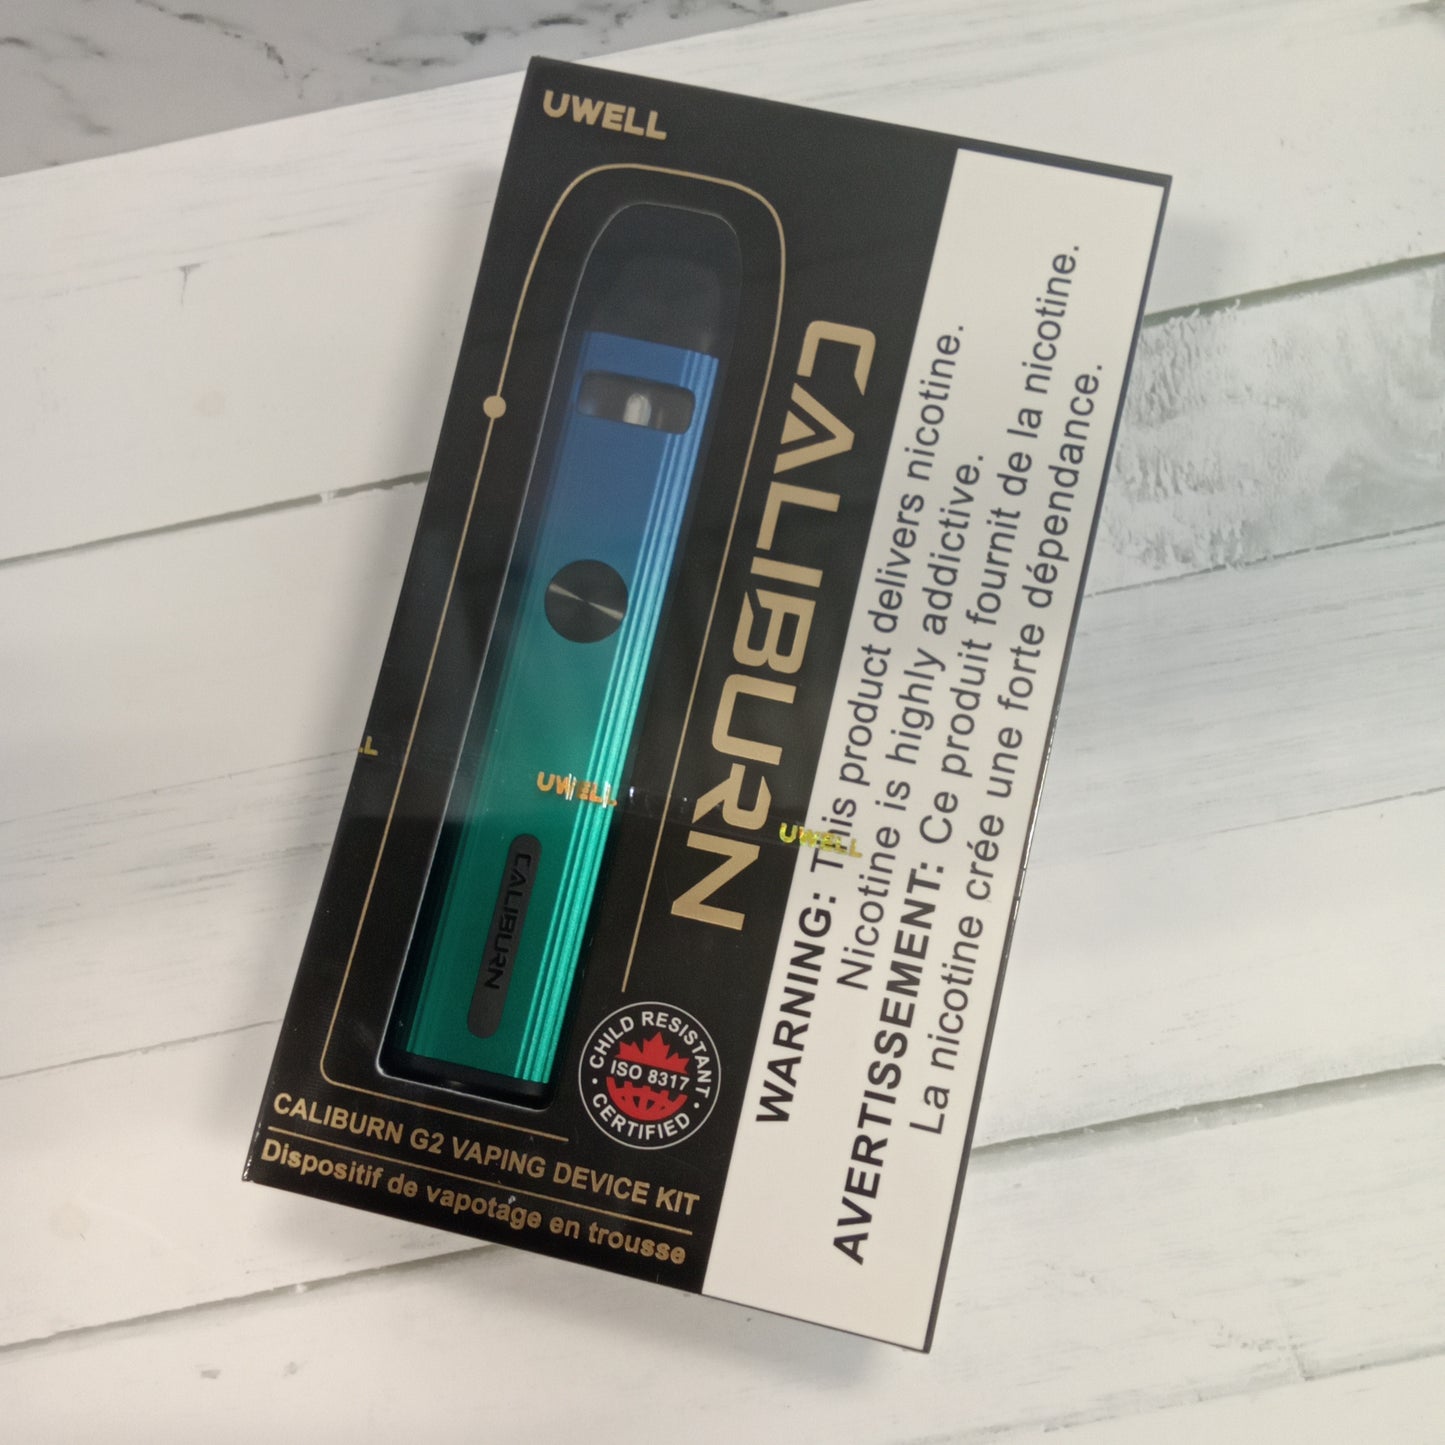 CALIBURN G2 Vaping device kit